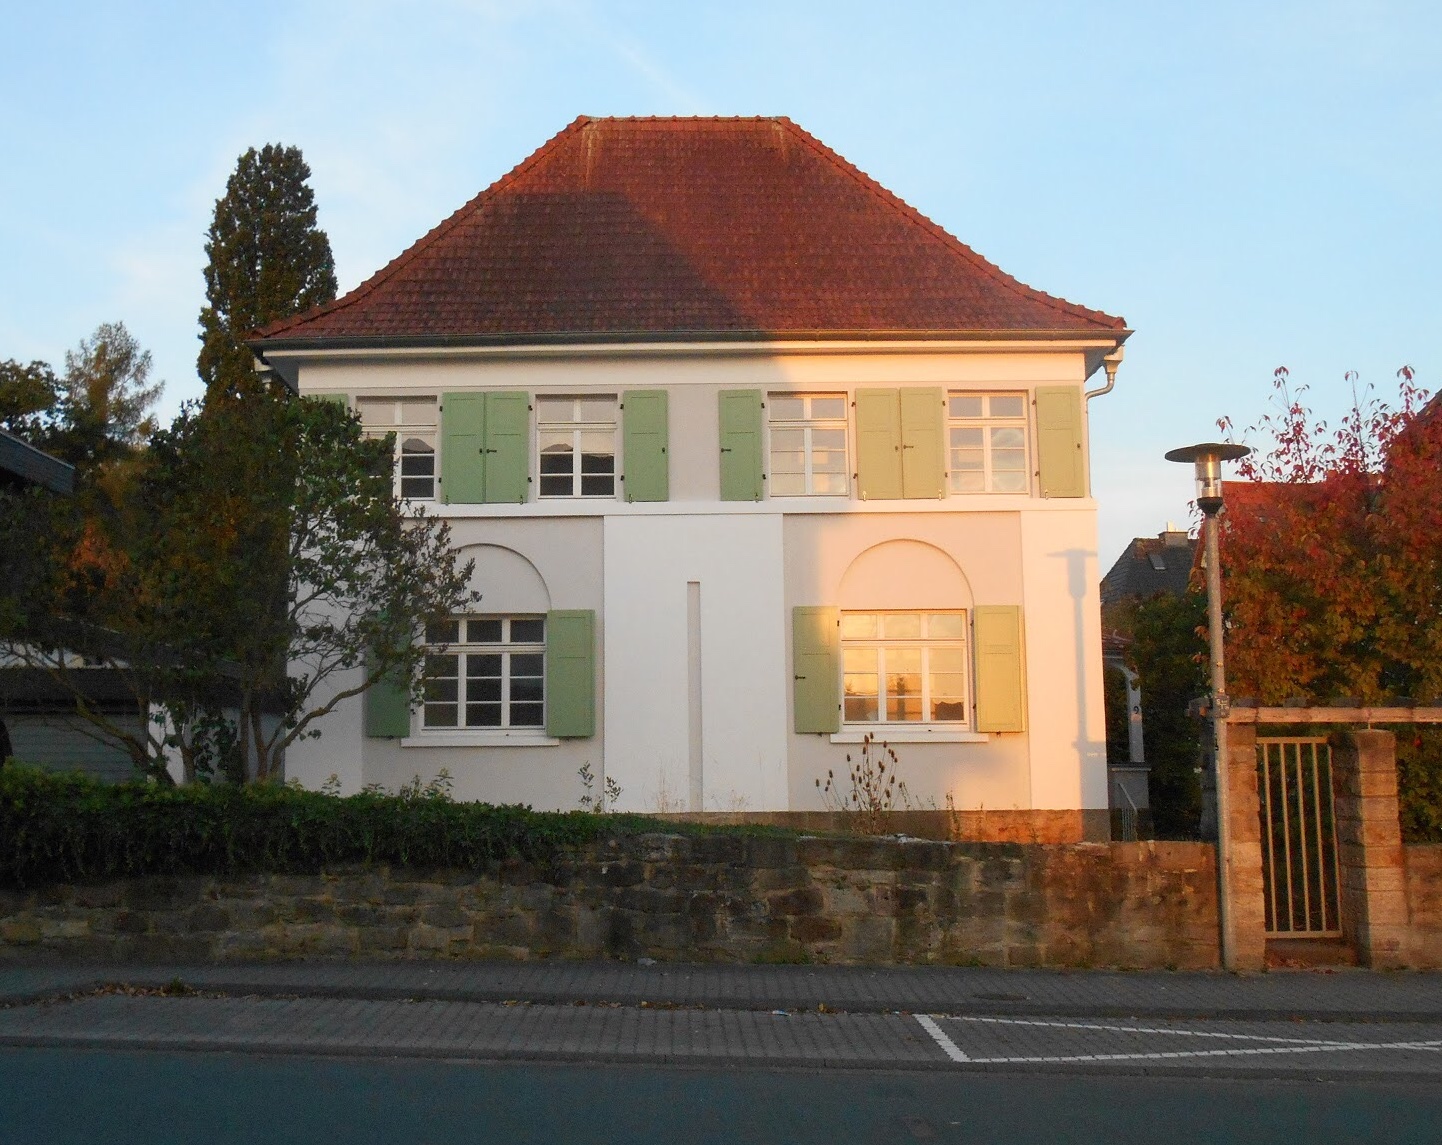 Haus vor dem Schöneberger Tor (Hofgeismar). F Ferienhaus in Deutschland